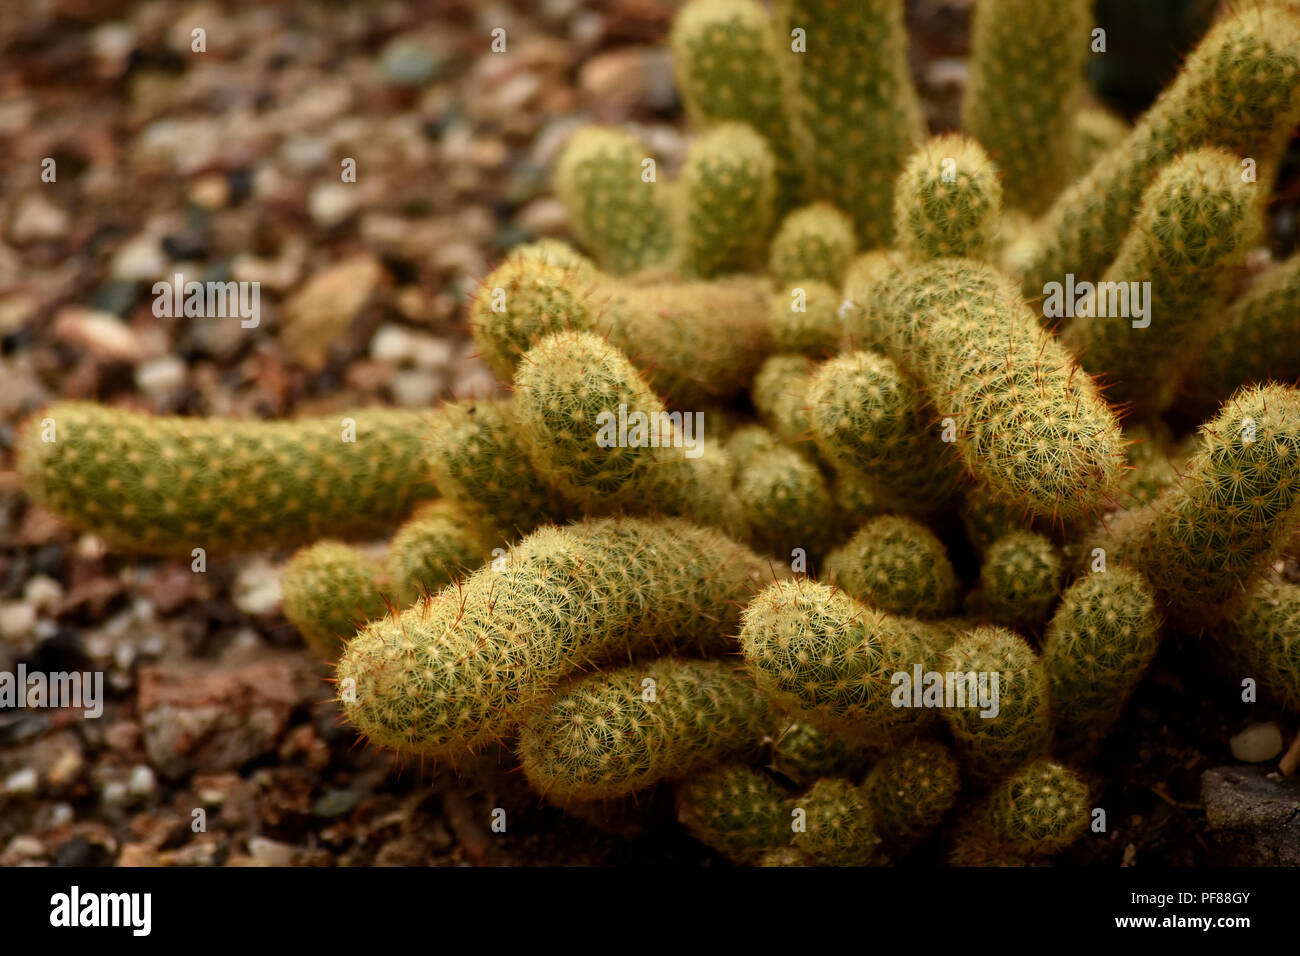 Close up of Mammillaria cactus. Stock Photo